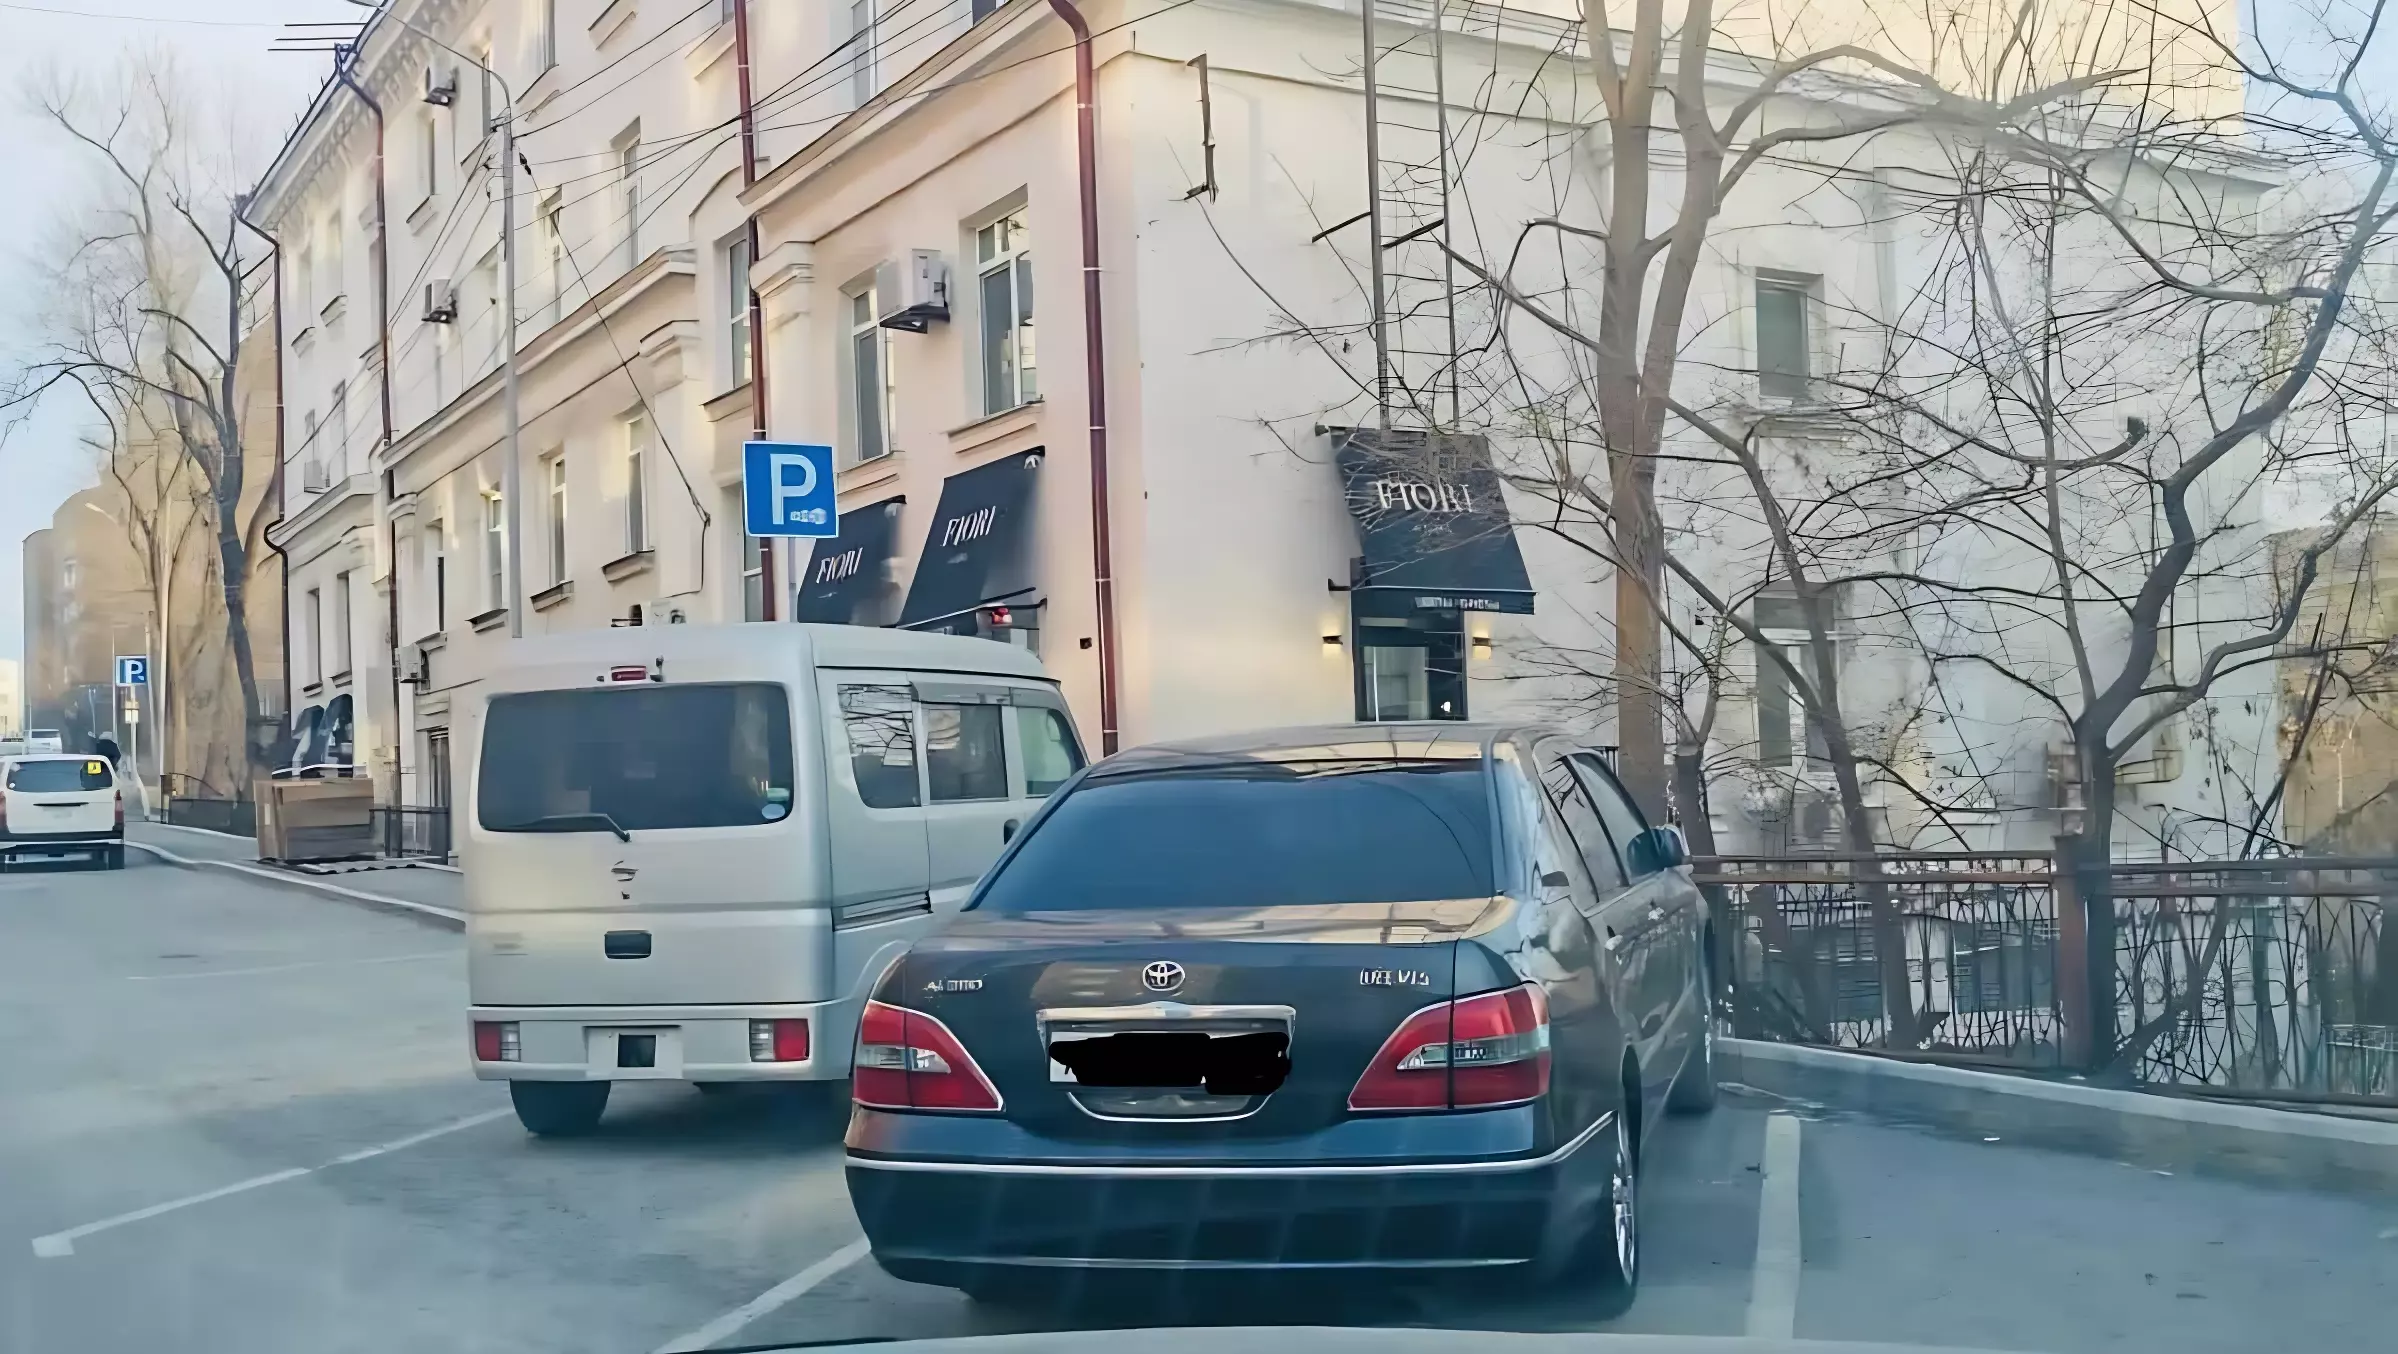 Во Владивостоке водитель подменил номер своего авто на платной парковке